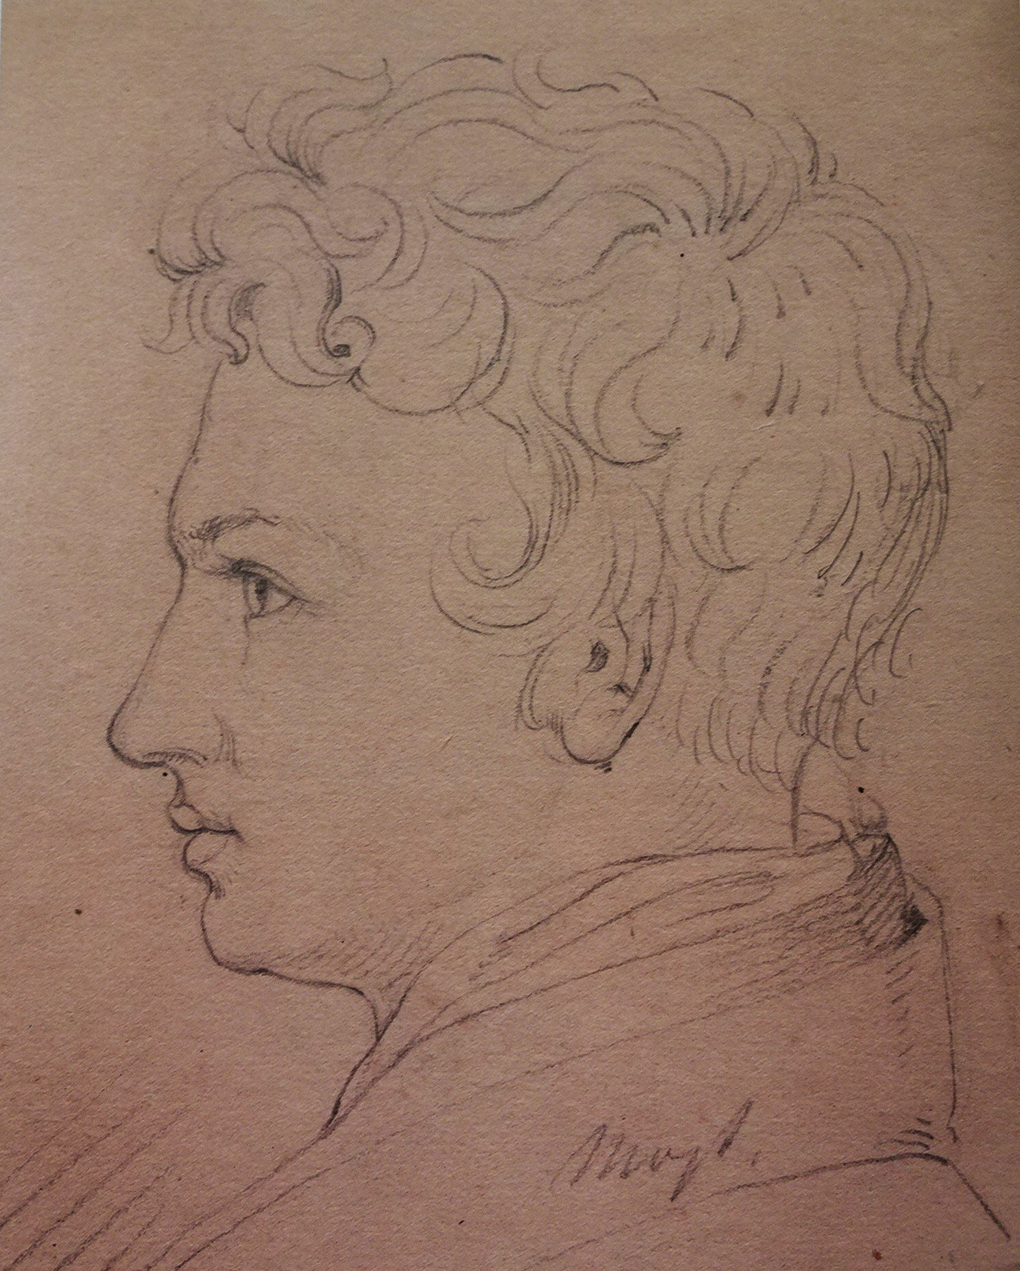 Ludwig Most, Autoportret z profilu, 19 lipca 1826, ołówek na papierze welinowym, Szkicownik nr I, karta 7, Muzeum Narodowe w Szczecinie